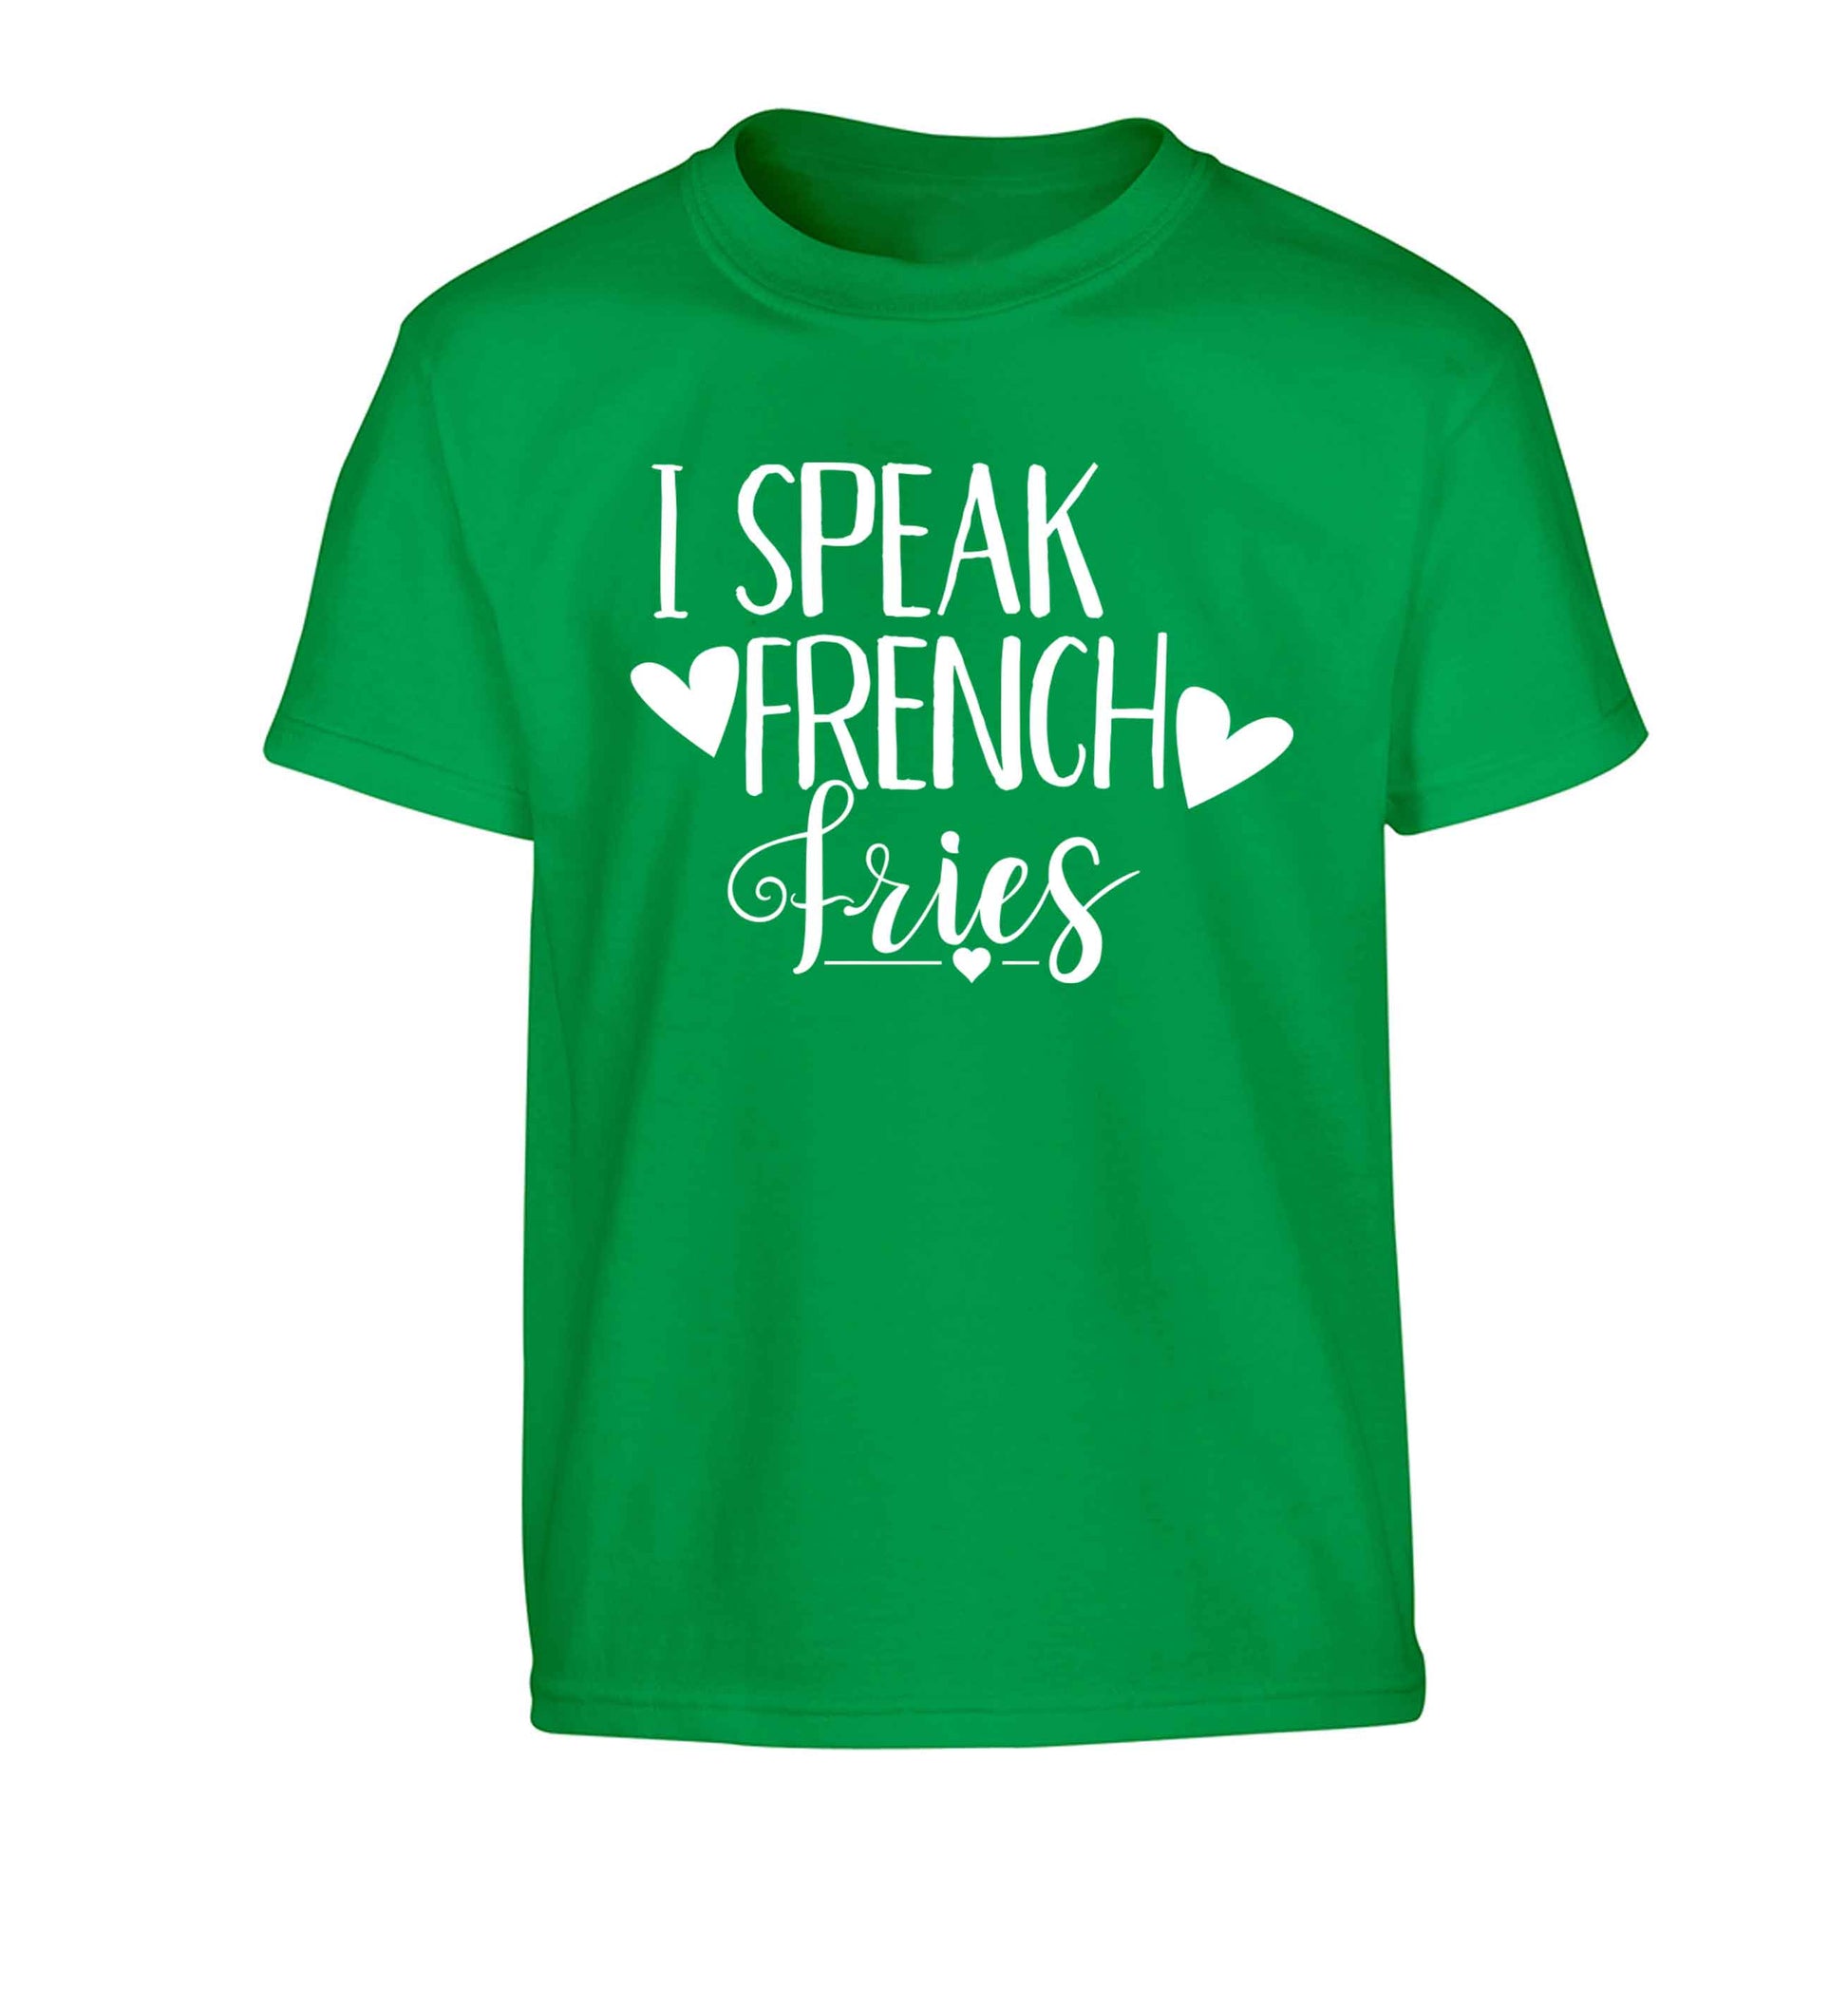 I speak French fries Children's green Tshirt 12-13 Years